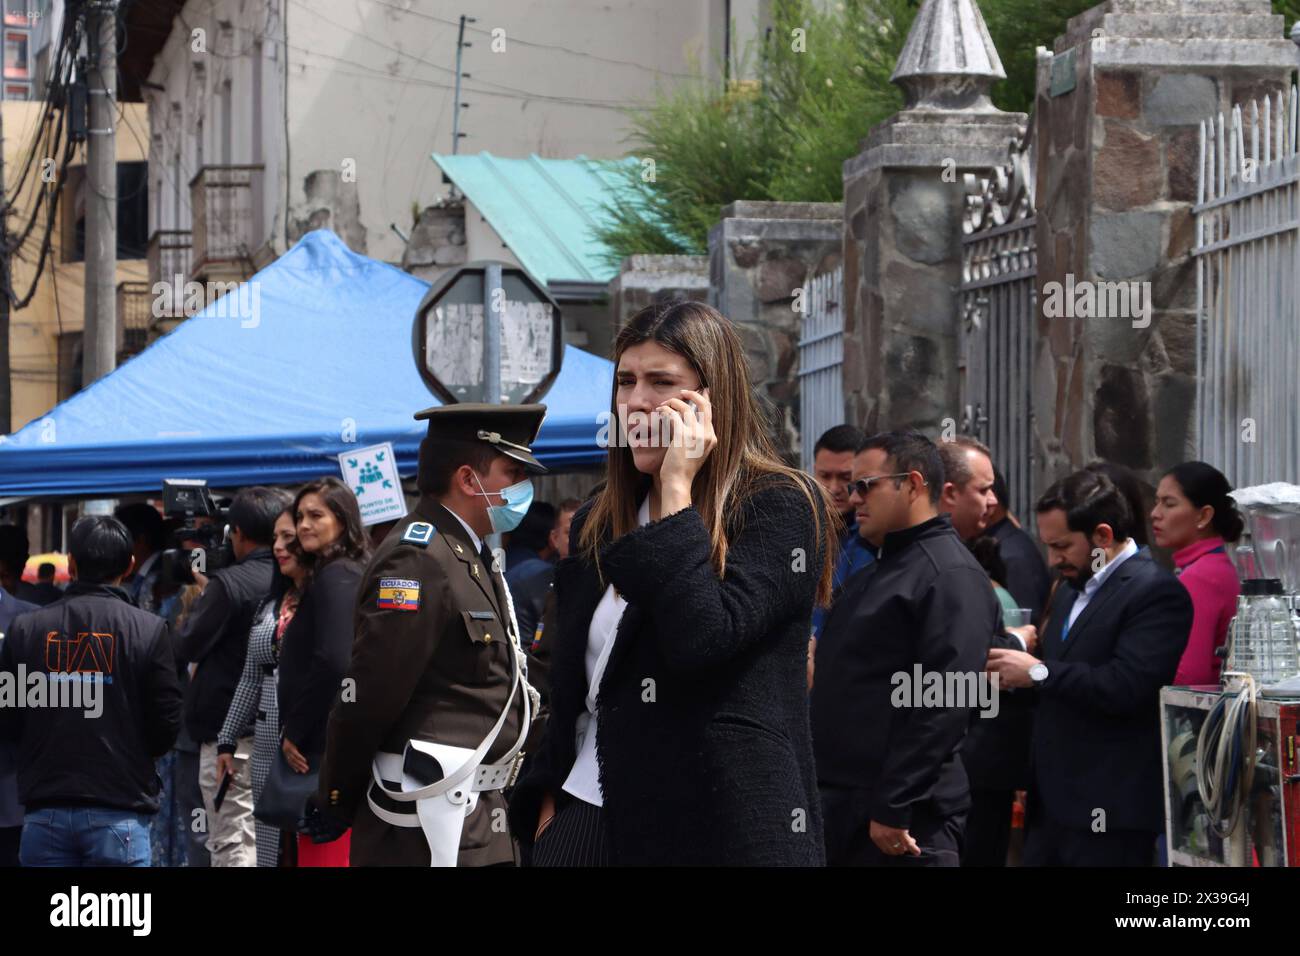 ASAMBLEA-SIMULACRO-ATENTADOS Quito, jueves 25 de abril del 2024 Similacro de atentados terroristas en contra de funcionarios y Asambleistas,en la Asamblea Nacional, Edificio del Palacio Legislativo y sus alrededores. Fotos:Rolando Enriquez/API Quito Pichincha Ecuador POL-ASAMBLEA-SIMULACRO-ATENTADOS-0fb8e5592eae603038fafa9f6896563f *** ASAMBLEA SIMULACRO SIMULACRO ATENTADOS Quito, Thursday, April 25, 2024 Simulation of terrorist attacks against officials and Assembly Members, in the National Assembly, Legislative Palace Building and its surroundings Photos Rolando Enriquez API Quito Pichincha Stock Photo